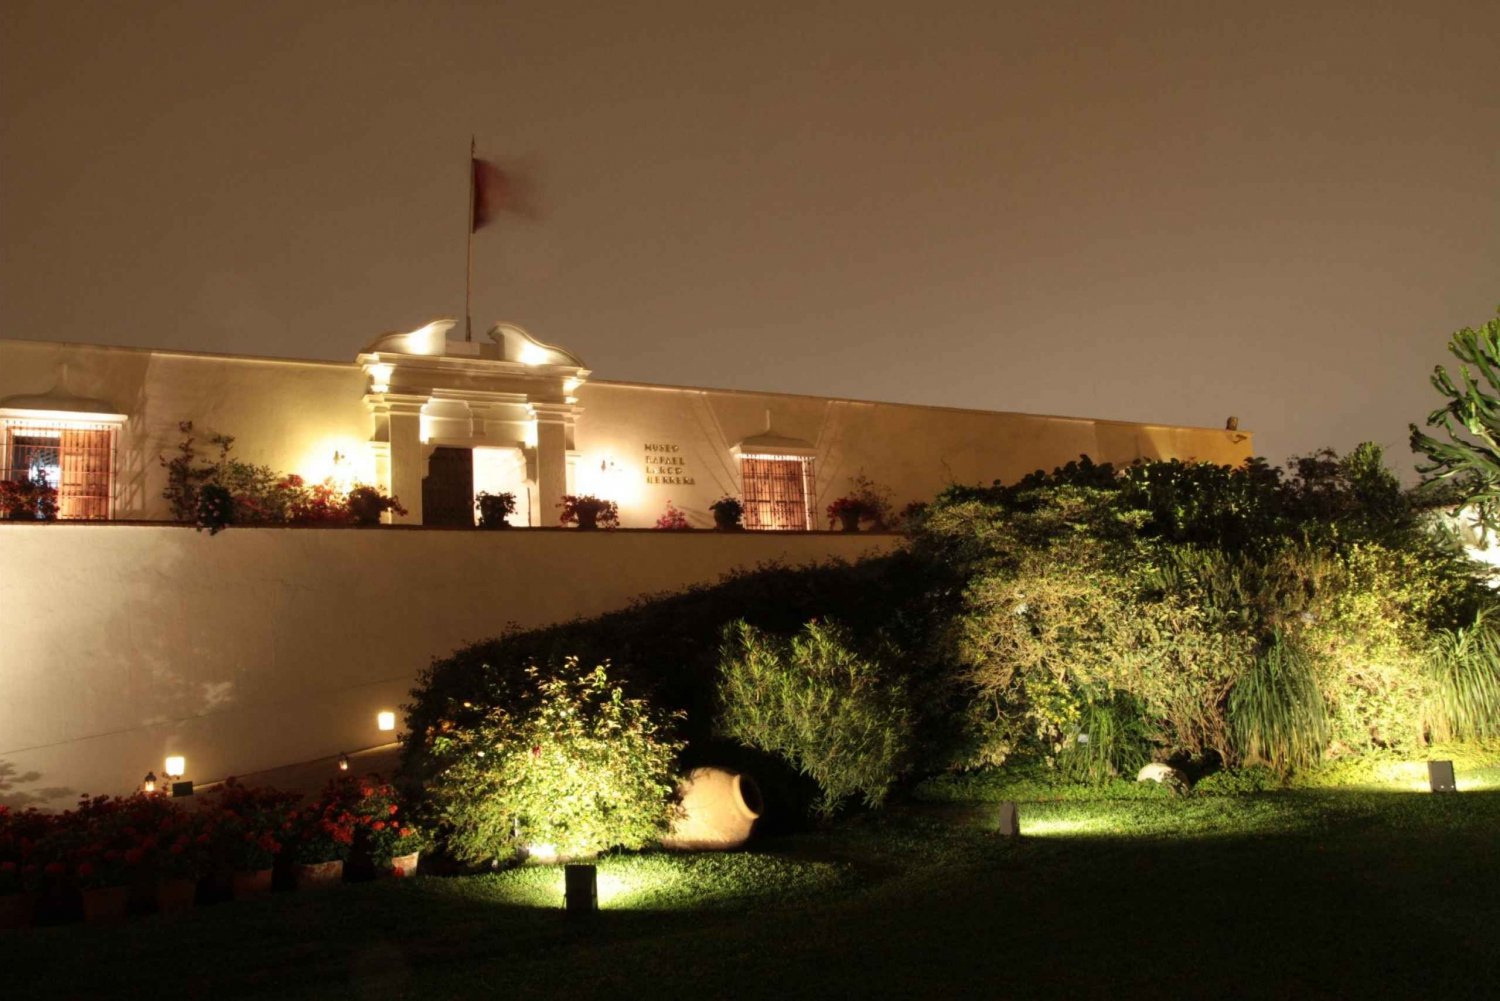 Lima: Ruinas de la Huaca y Museo Larco de Noche con Cena